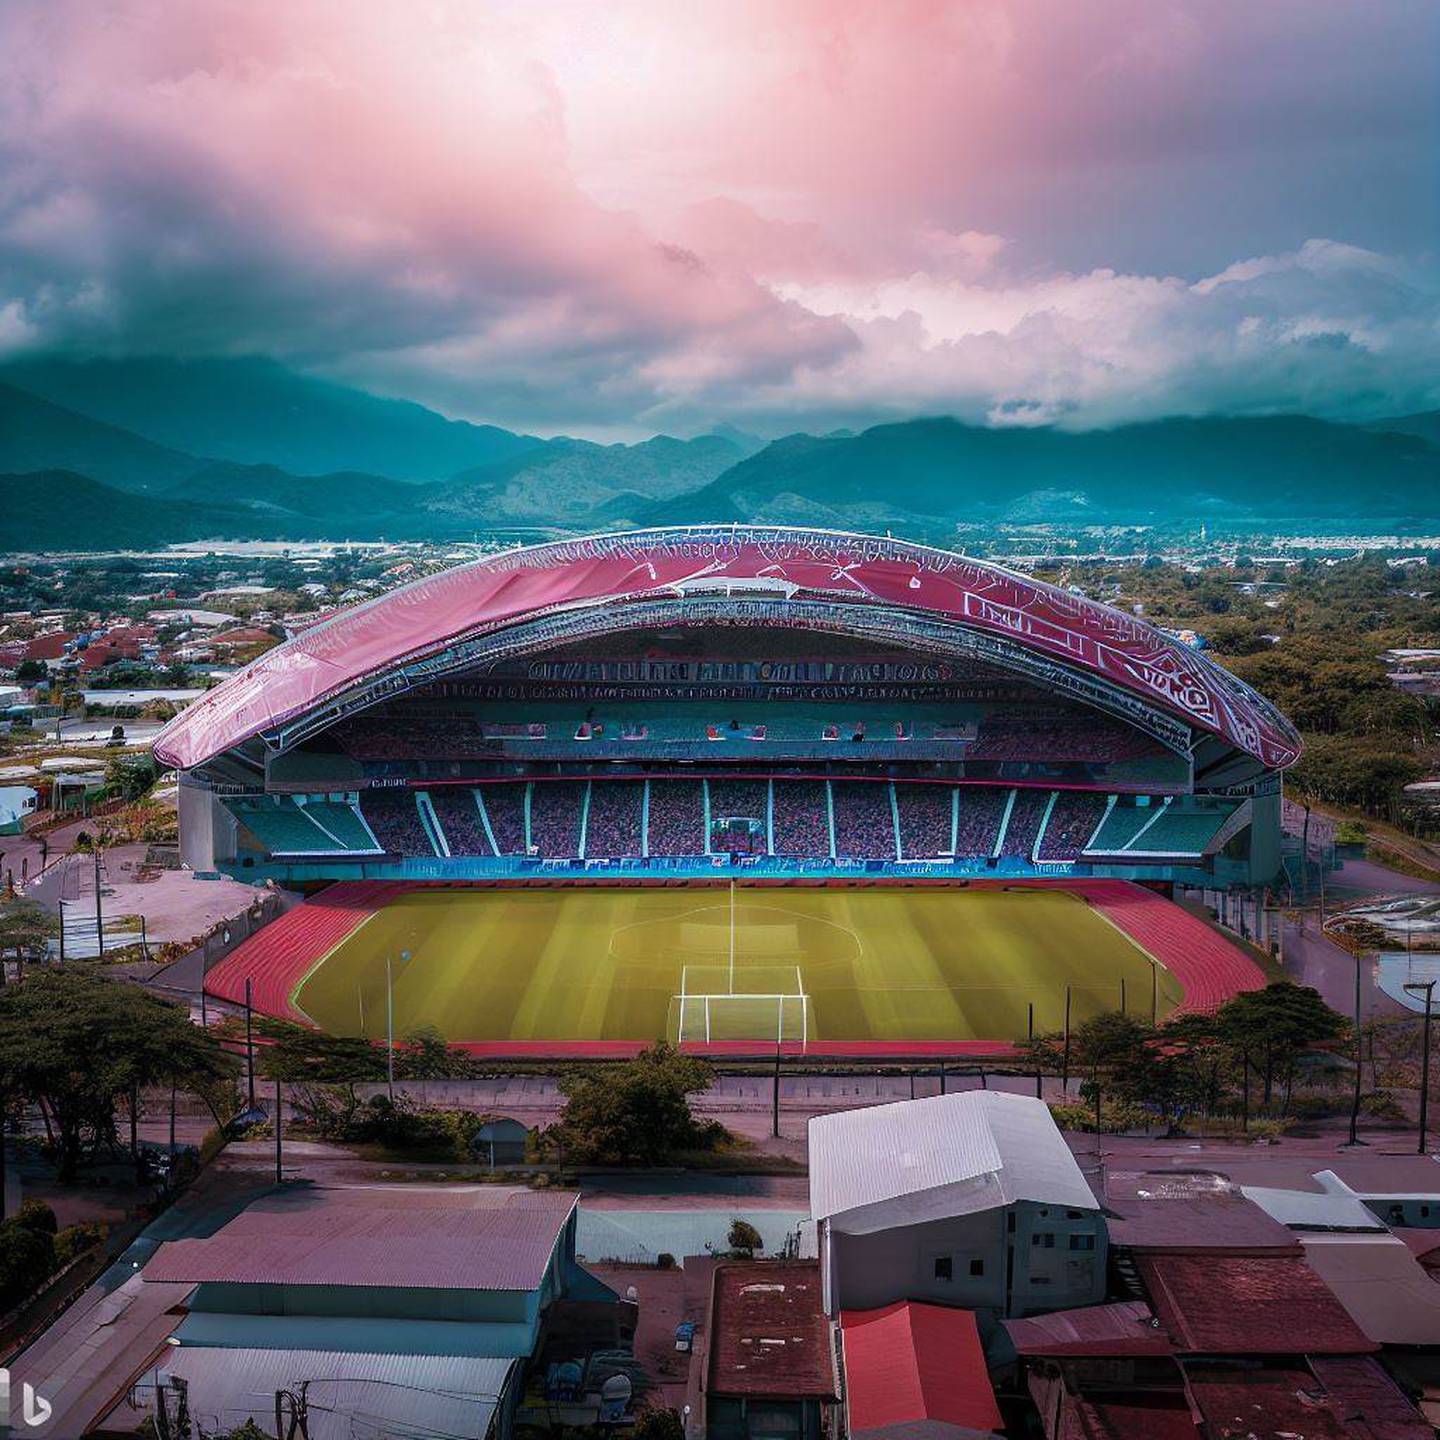 Estadio de Saprissa en el año 2073 según Bing Image Creator | El Financiero